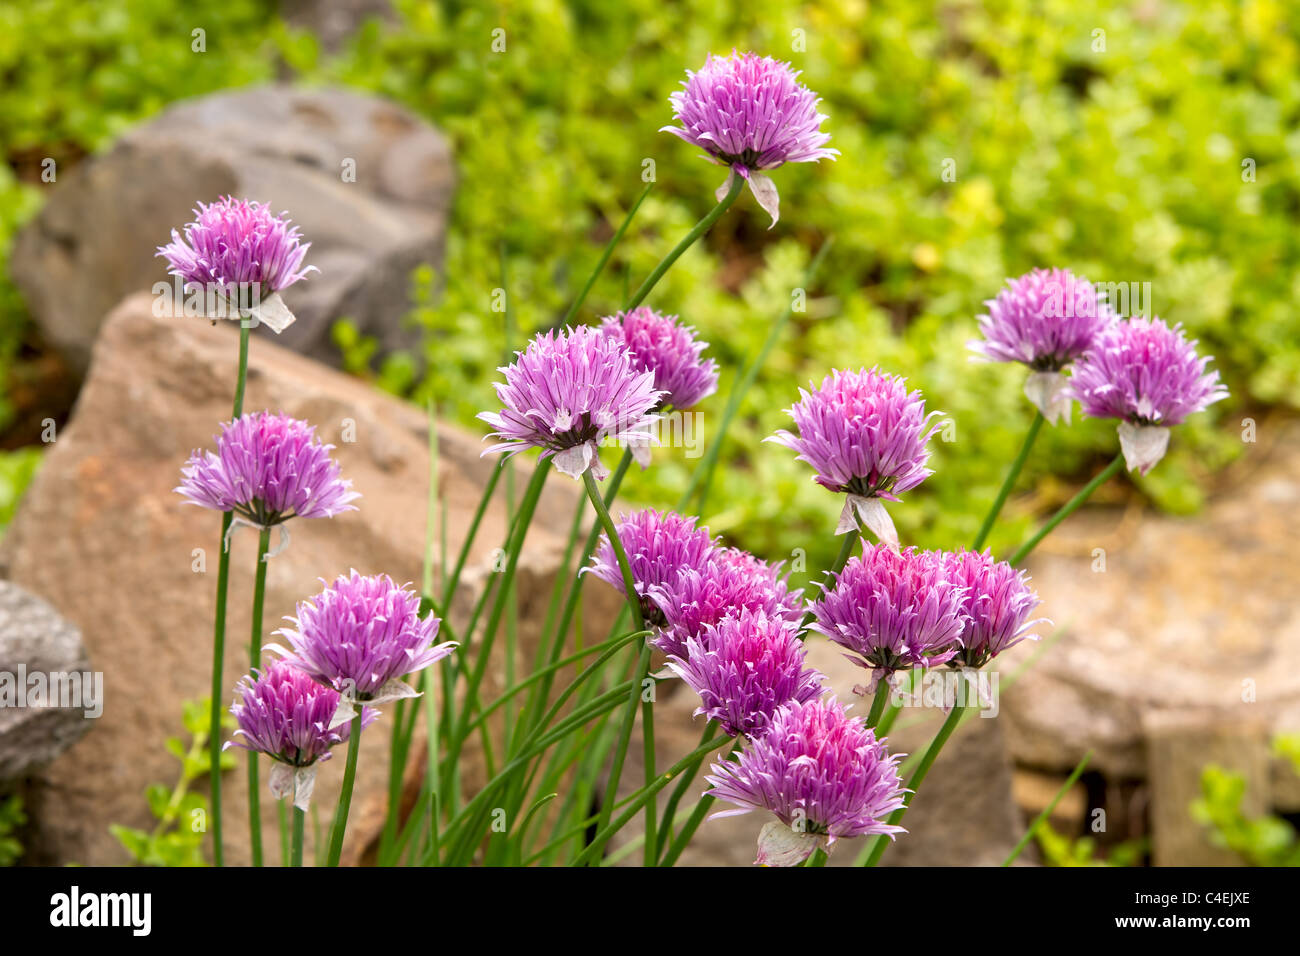 Aglio erba cipollina fioriture dei fiori nel giardino di erbe aromatiche Foto Stock